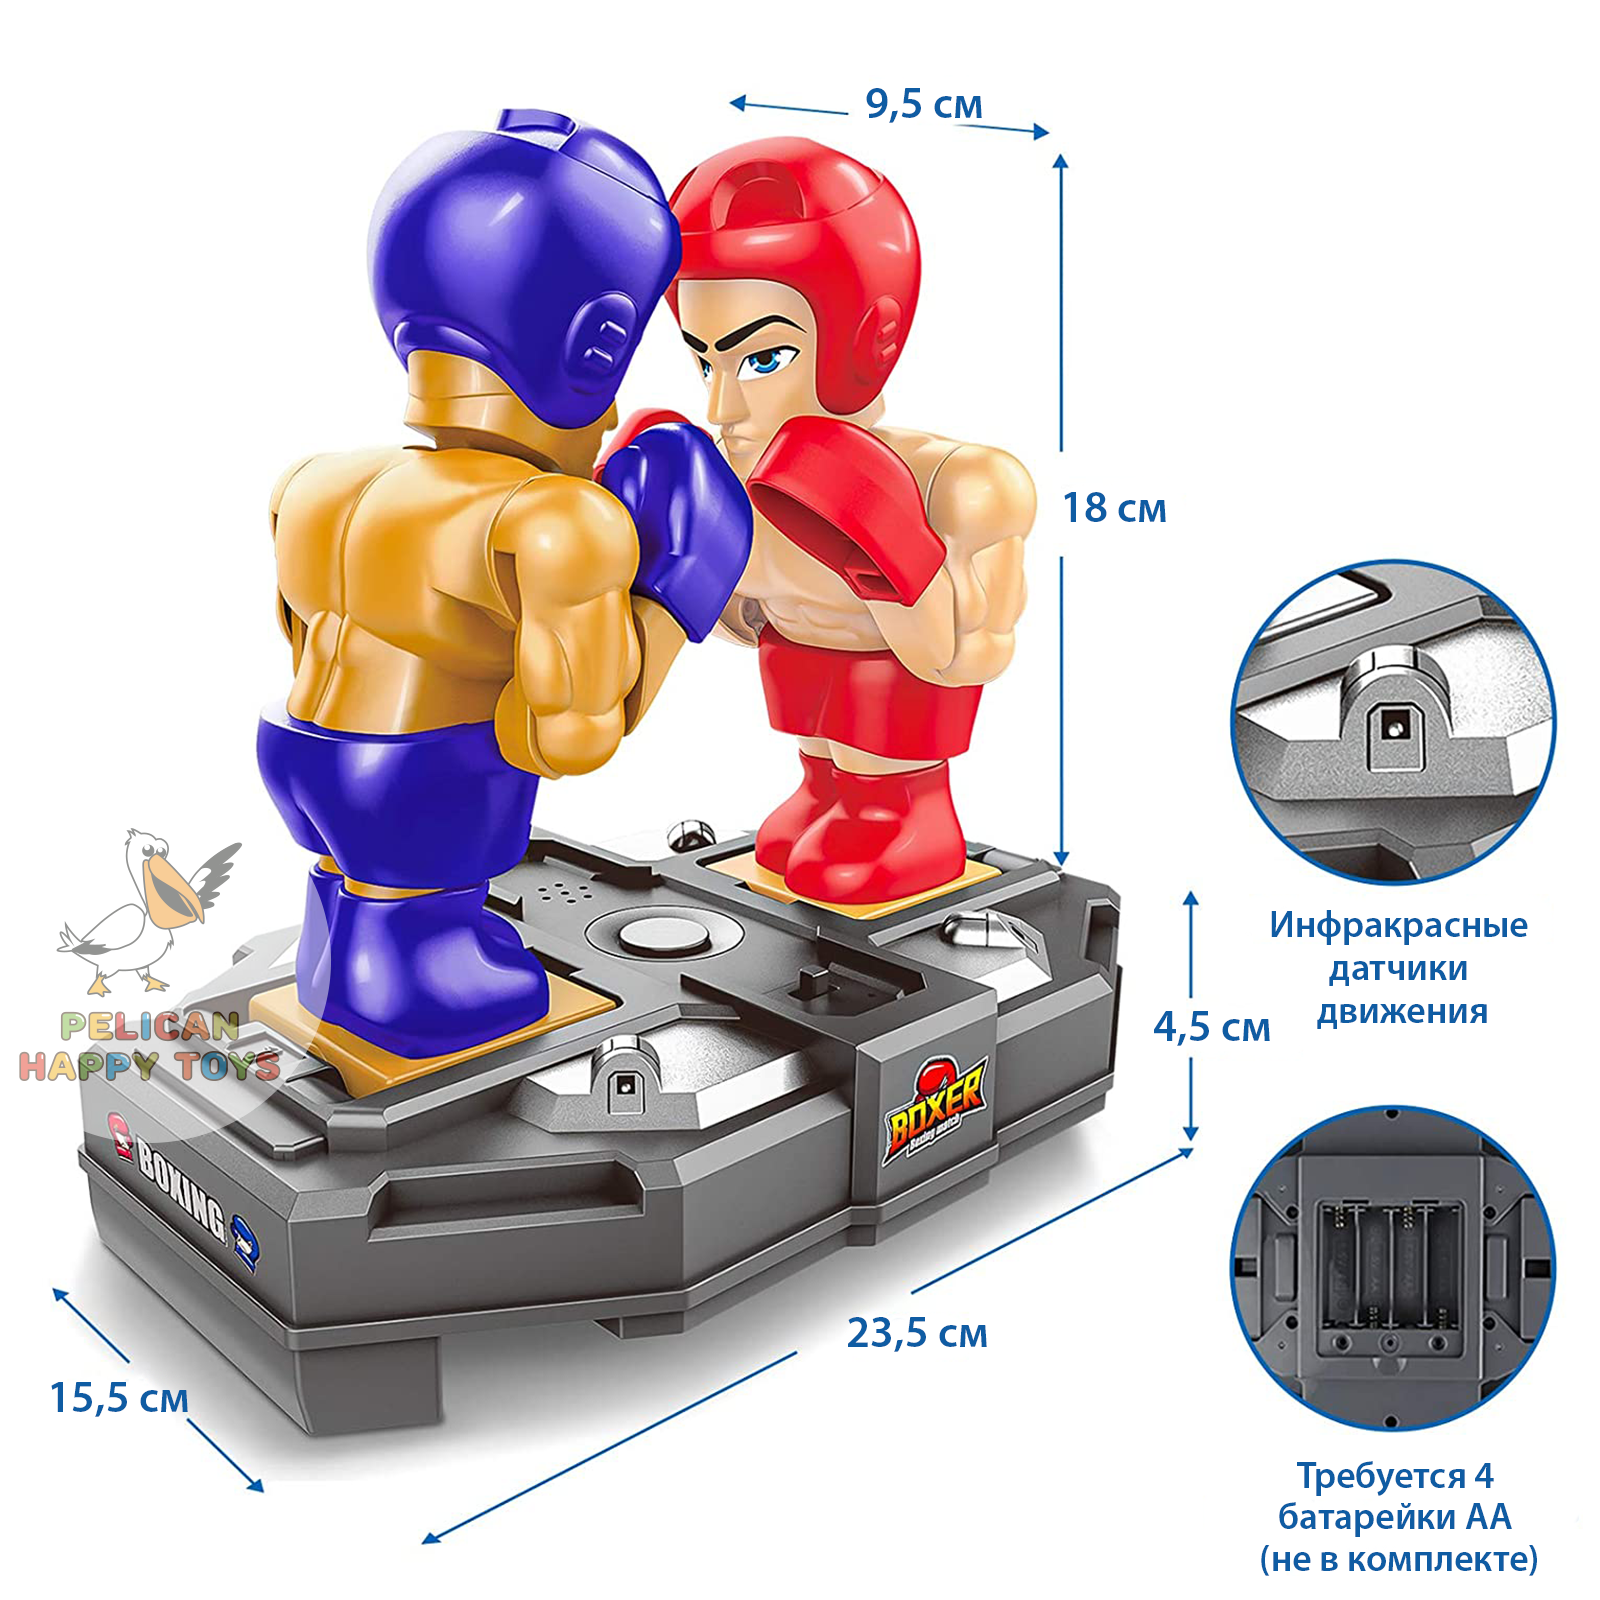 Роботы Боксеры PELICAN HAPPY TOYS Интерактивная Игра на сенсорном управлении - фото 9